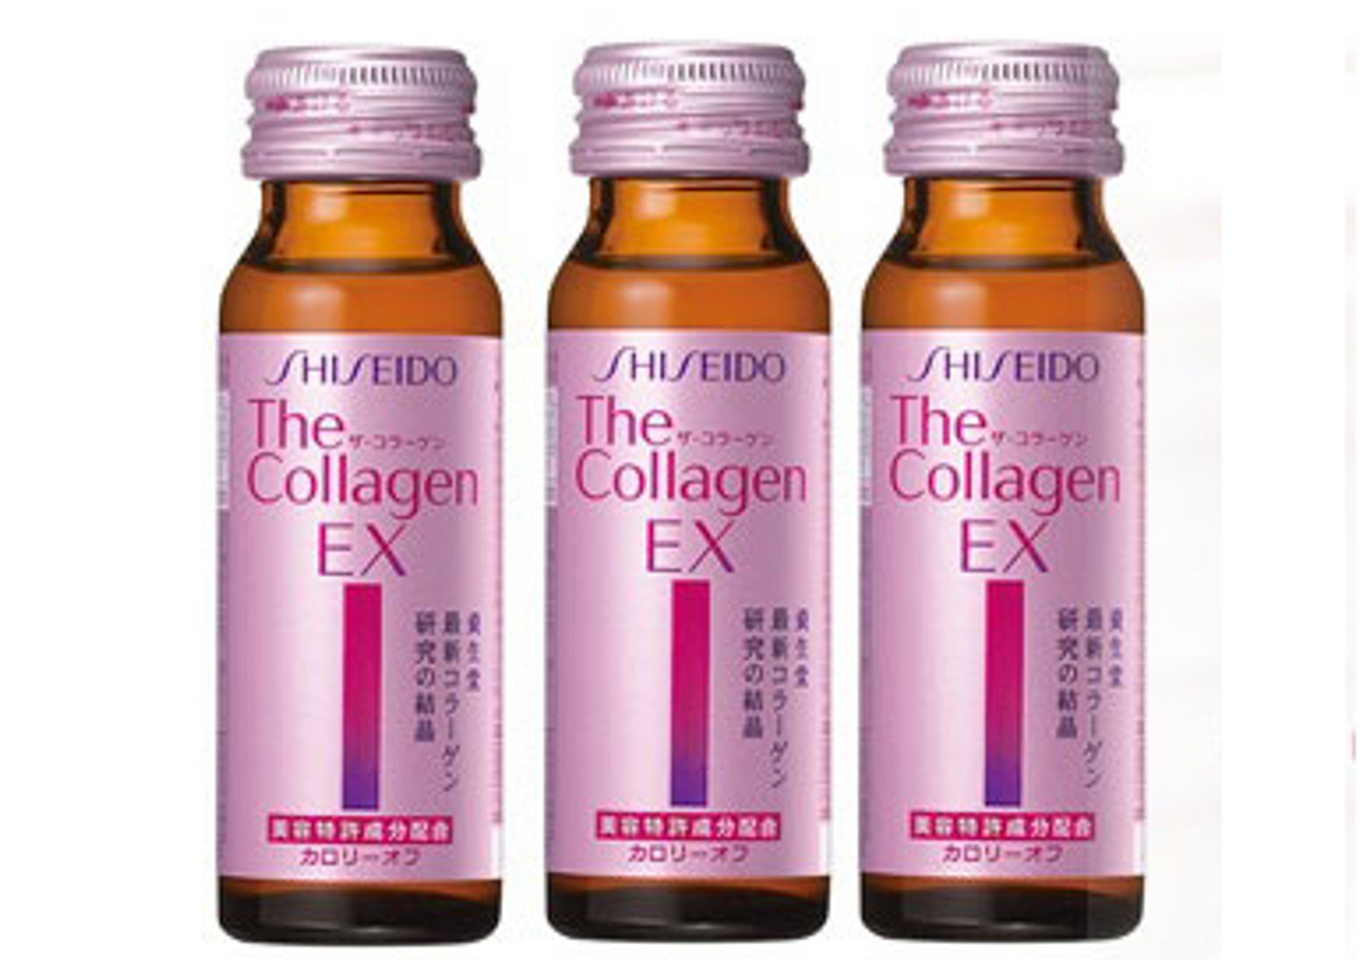 The Collagen Shiseido EX dạng nước với hàm lượng collagen thích hợp cho phụ nữ từ 25 tuổi – 40 tuổi